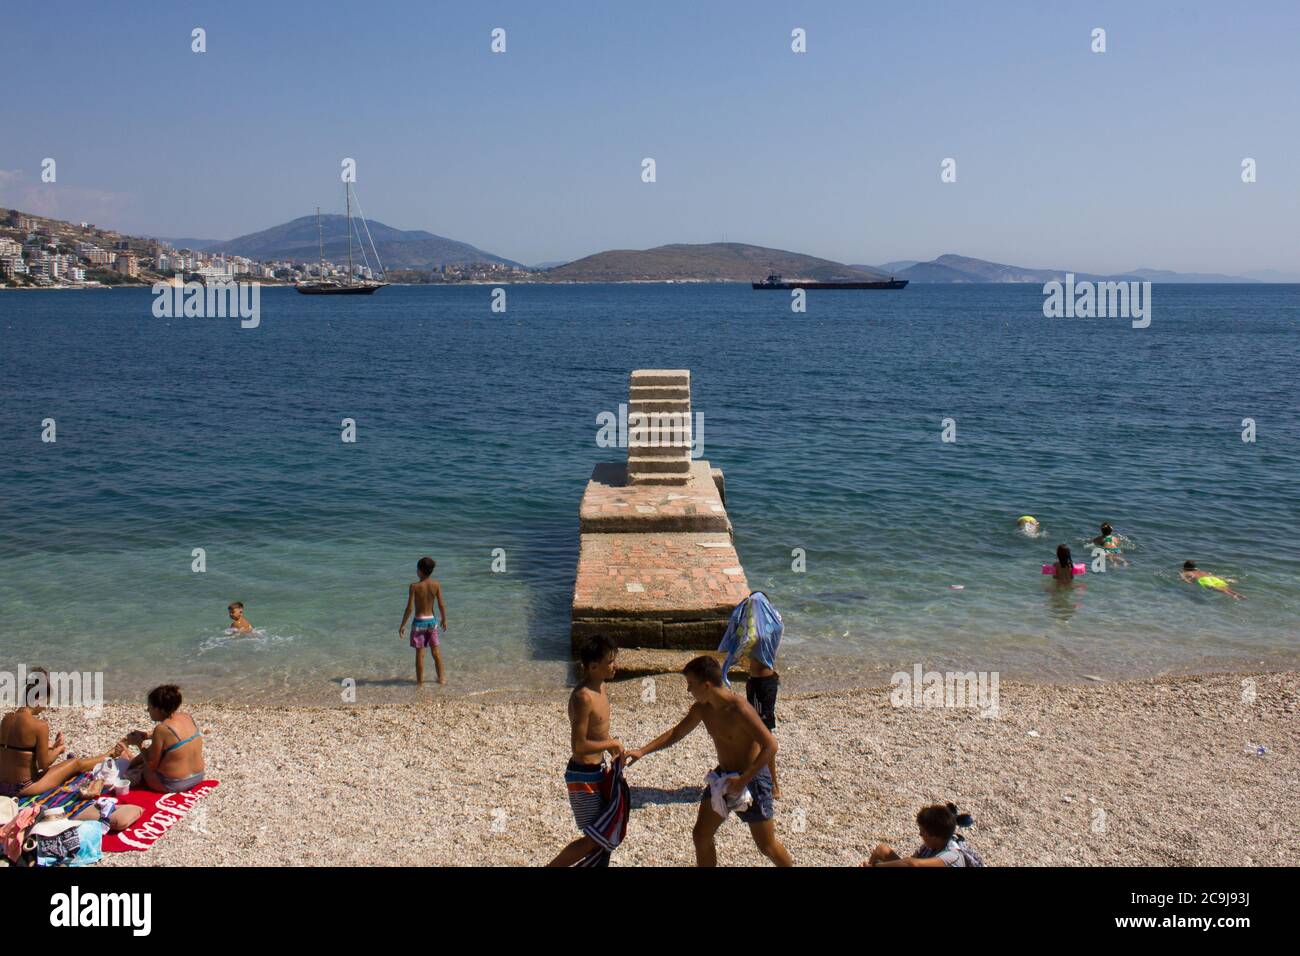 Saranda / Albanie - juillet 2020: La plage publique de Saranda avec des escaliers en pierre est pleine de vacanciers en vacances comme les restrictions coronavirus sont levées Banque D'Images